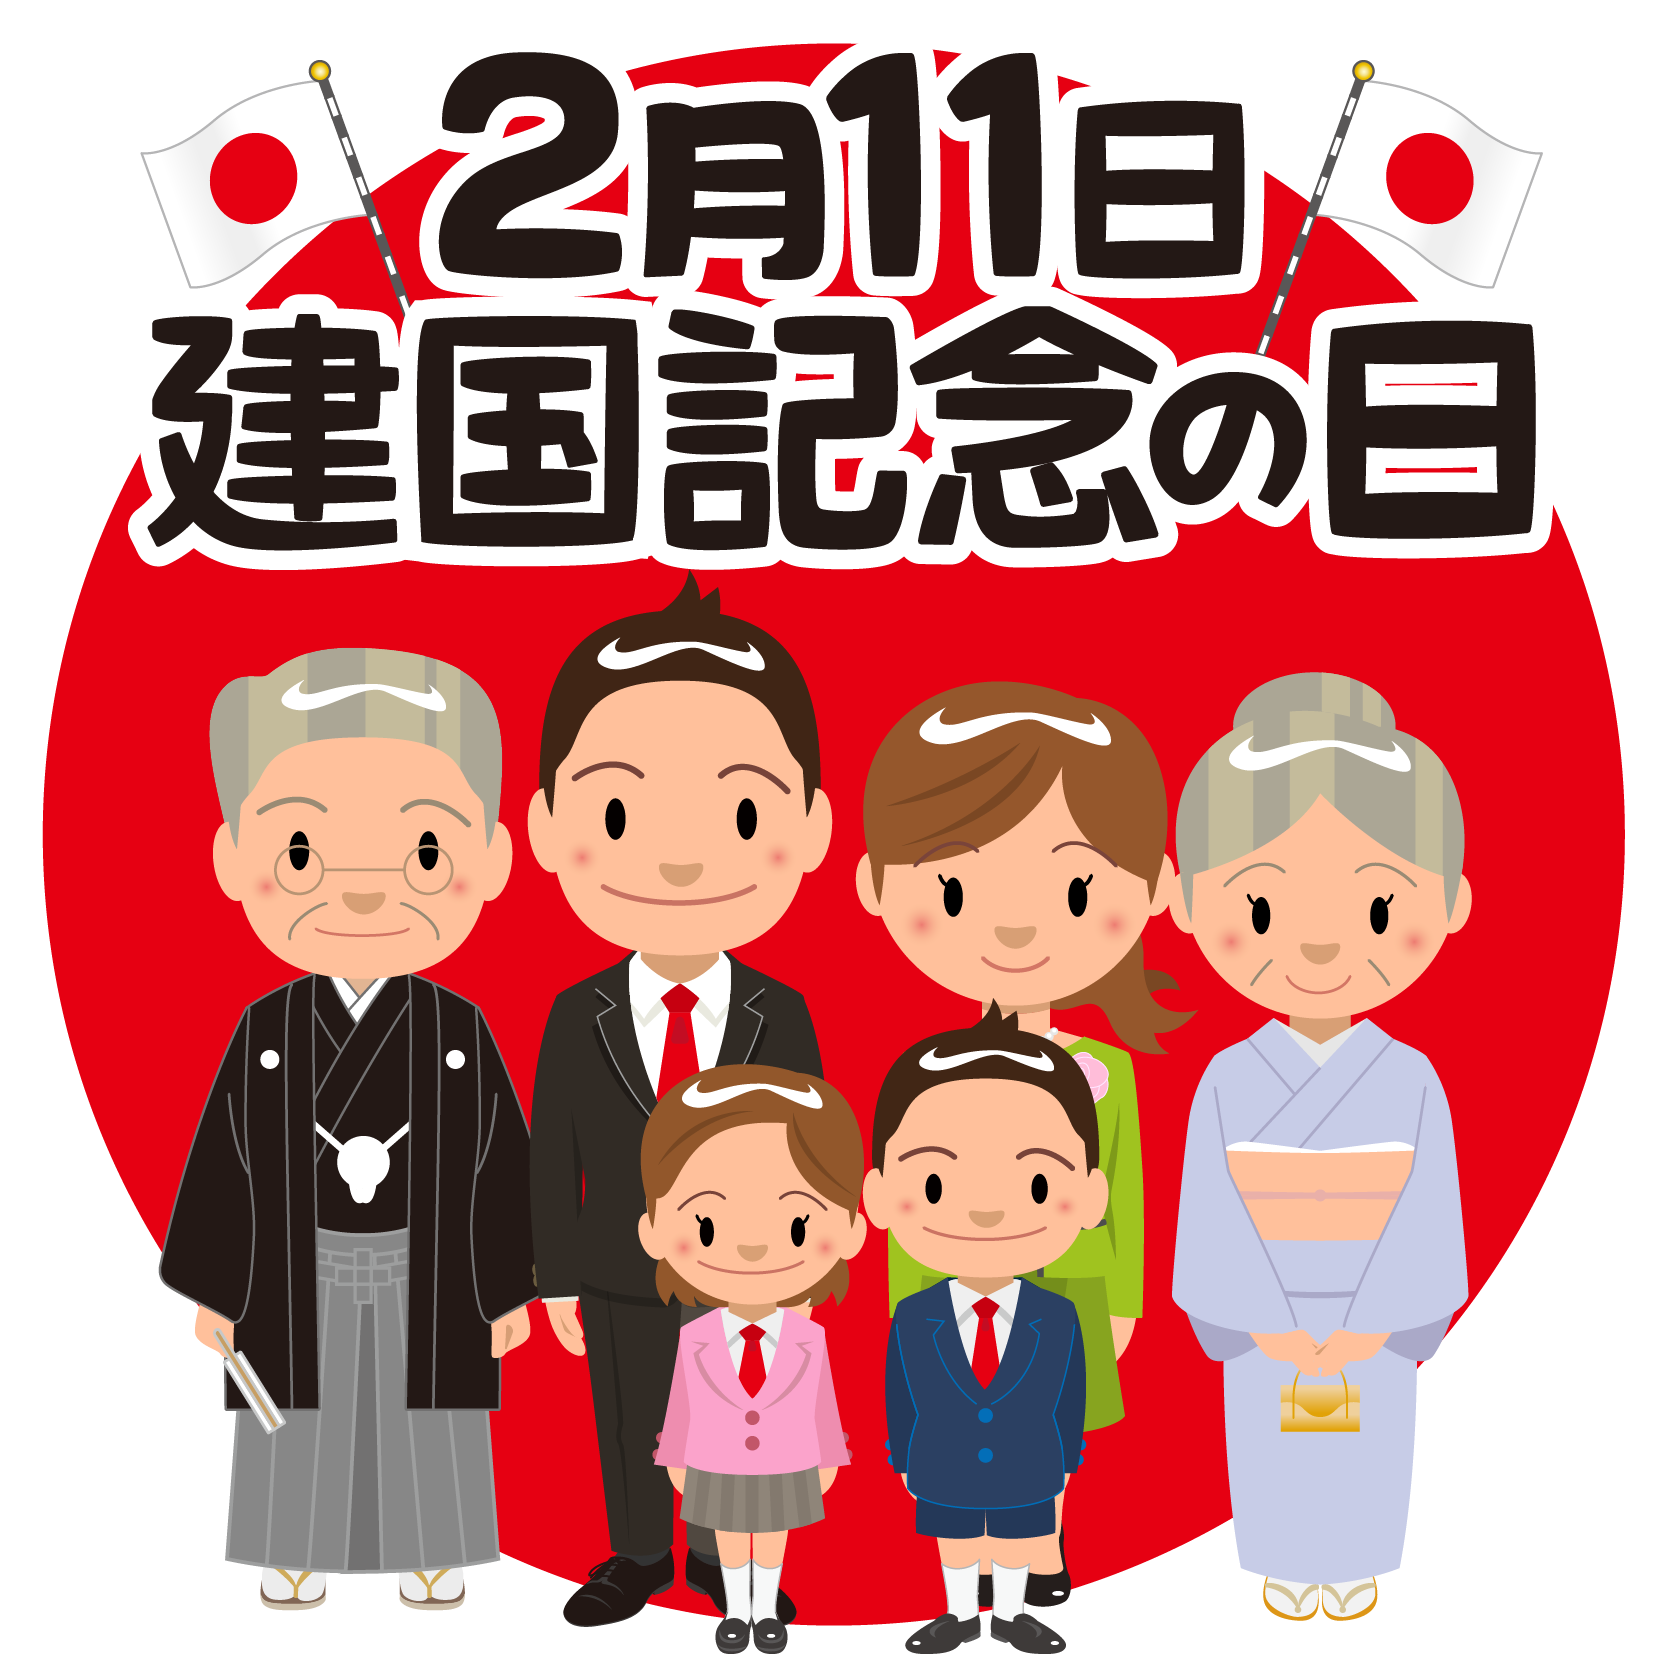 商用フリー 無料イラスト 建国記念日 Japan National Foundation Day025 商用ok フリー素材集 ナイスなイラスト